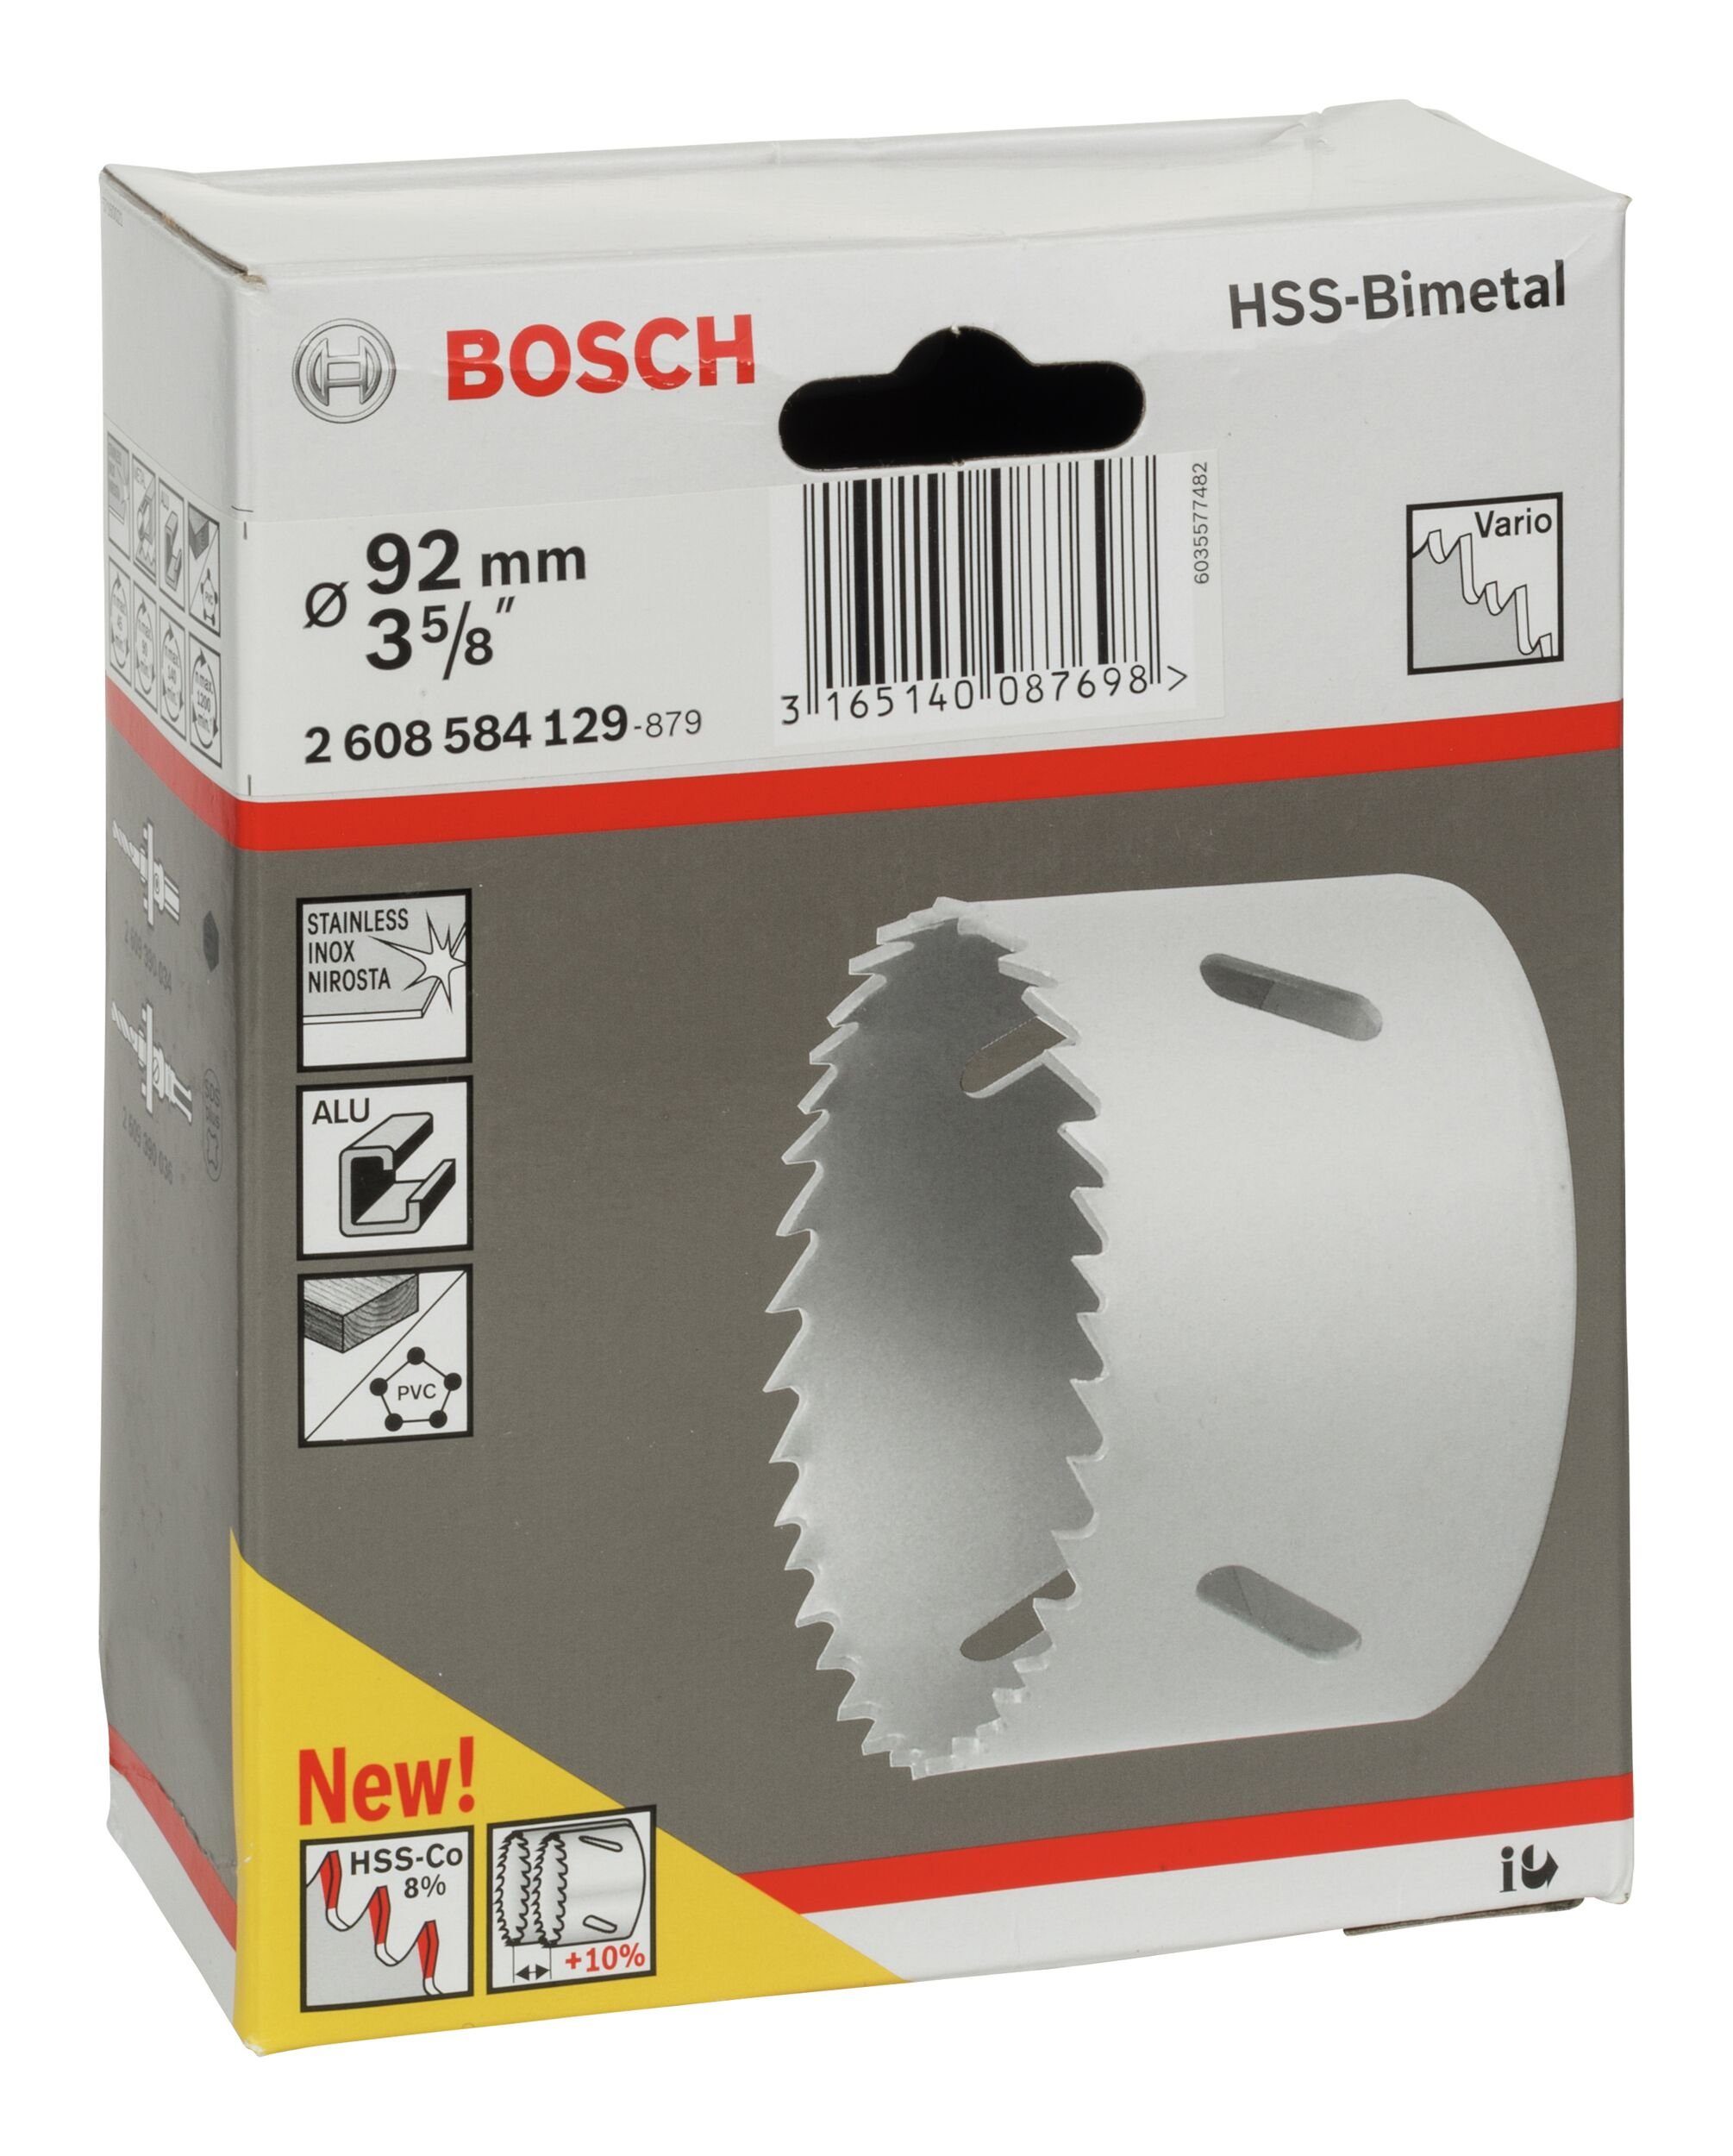 3 HSS-Bimetall mm, Lochsäge, Ø 92 für - 5/8" BOSCH Standardadapter /